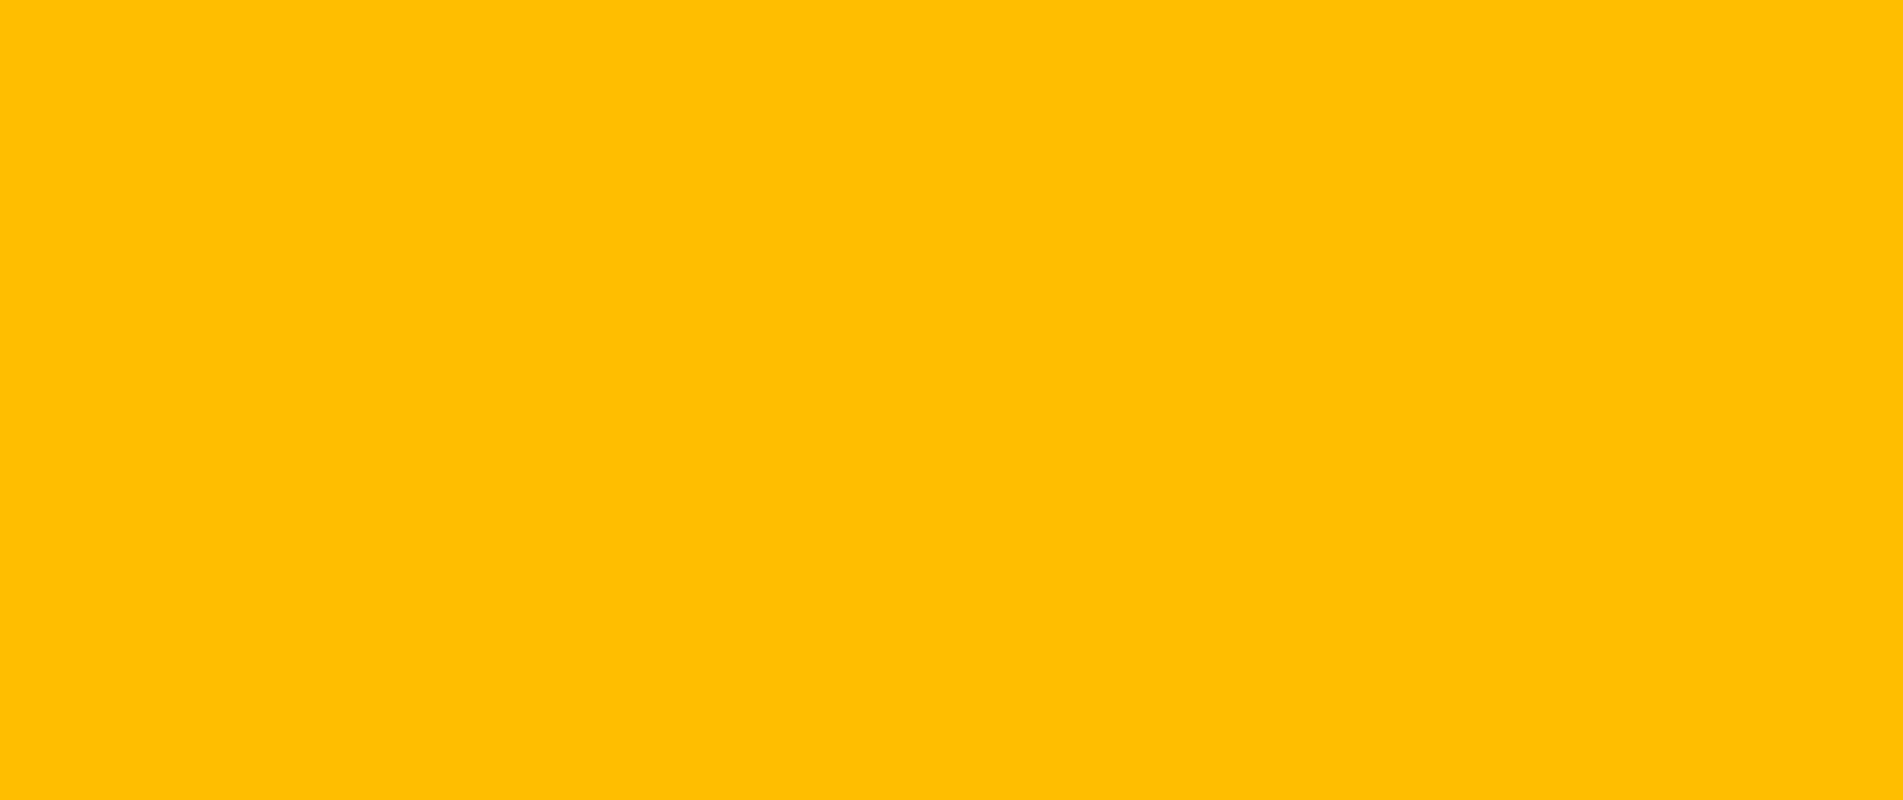 Farbwelt gelb